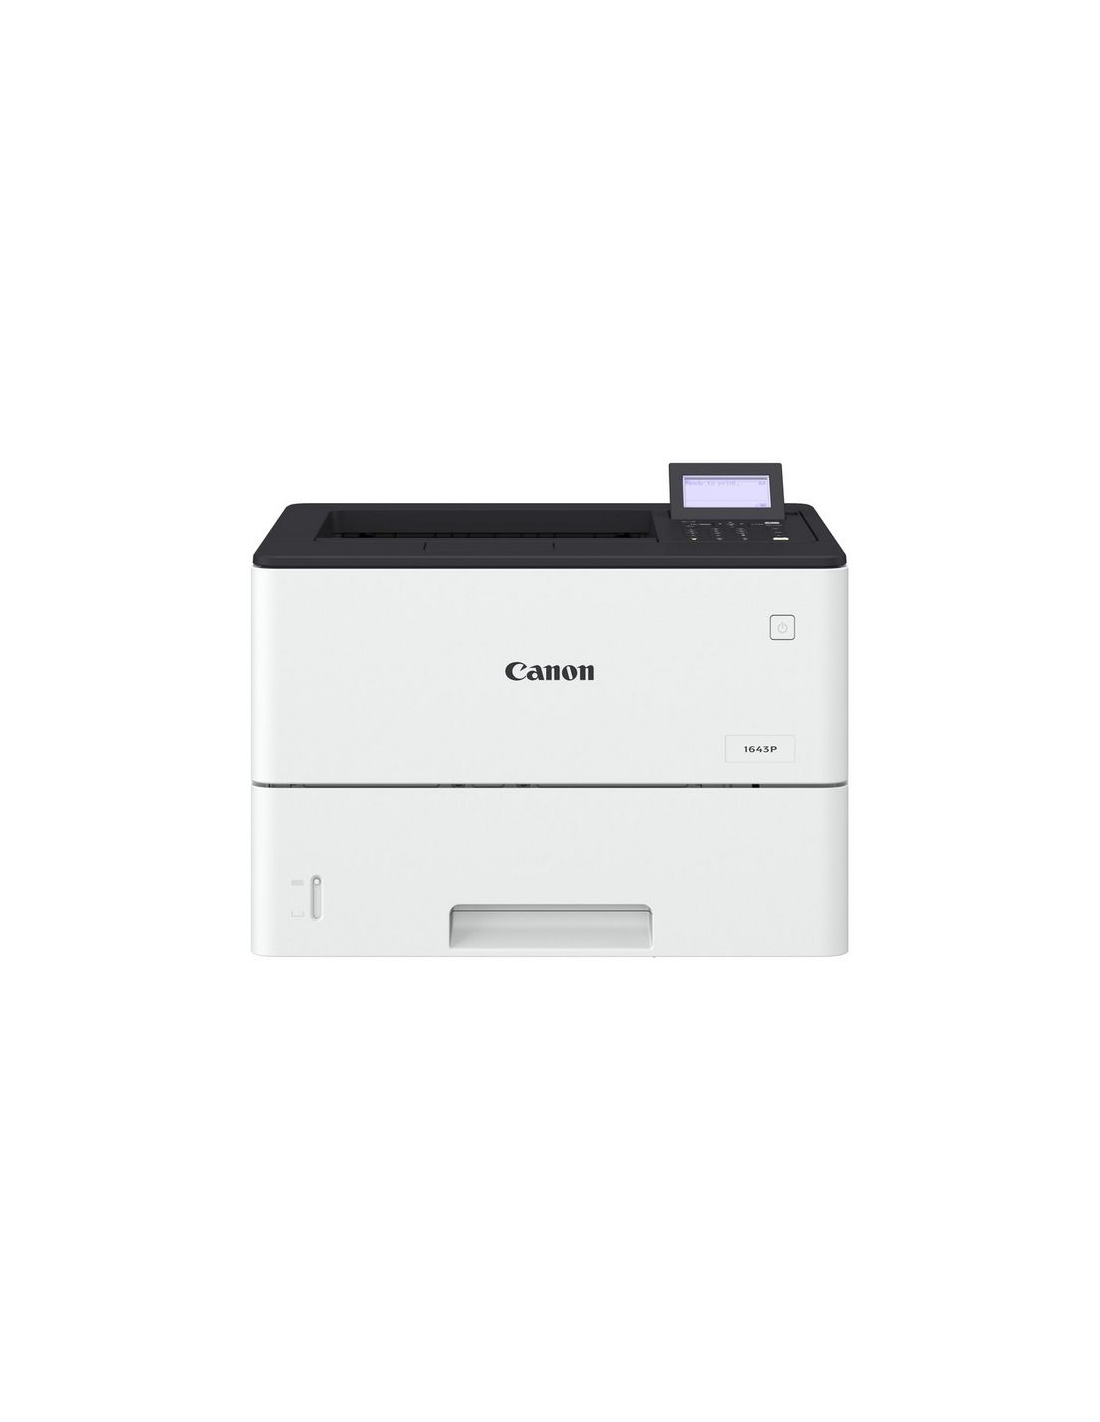 Imprimante Laser A4 Noir et Blanc BROTHER HL-L5100DN - BUROTIC STORE